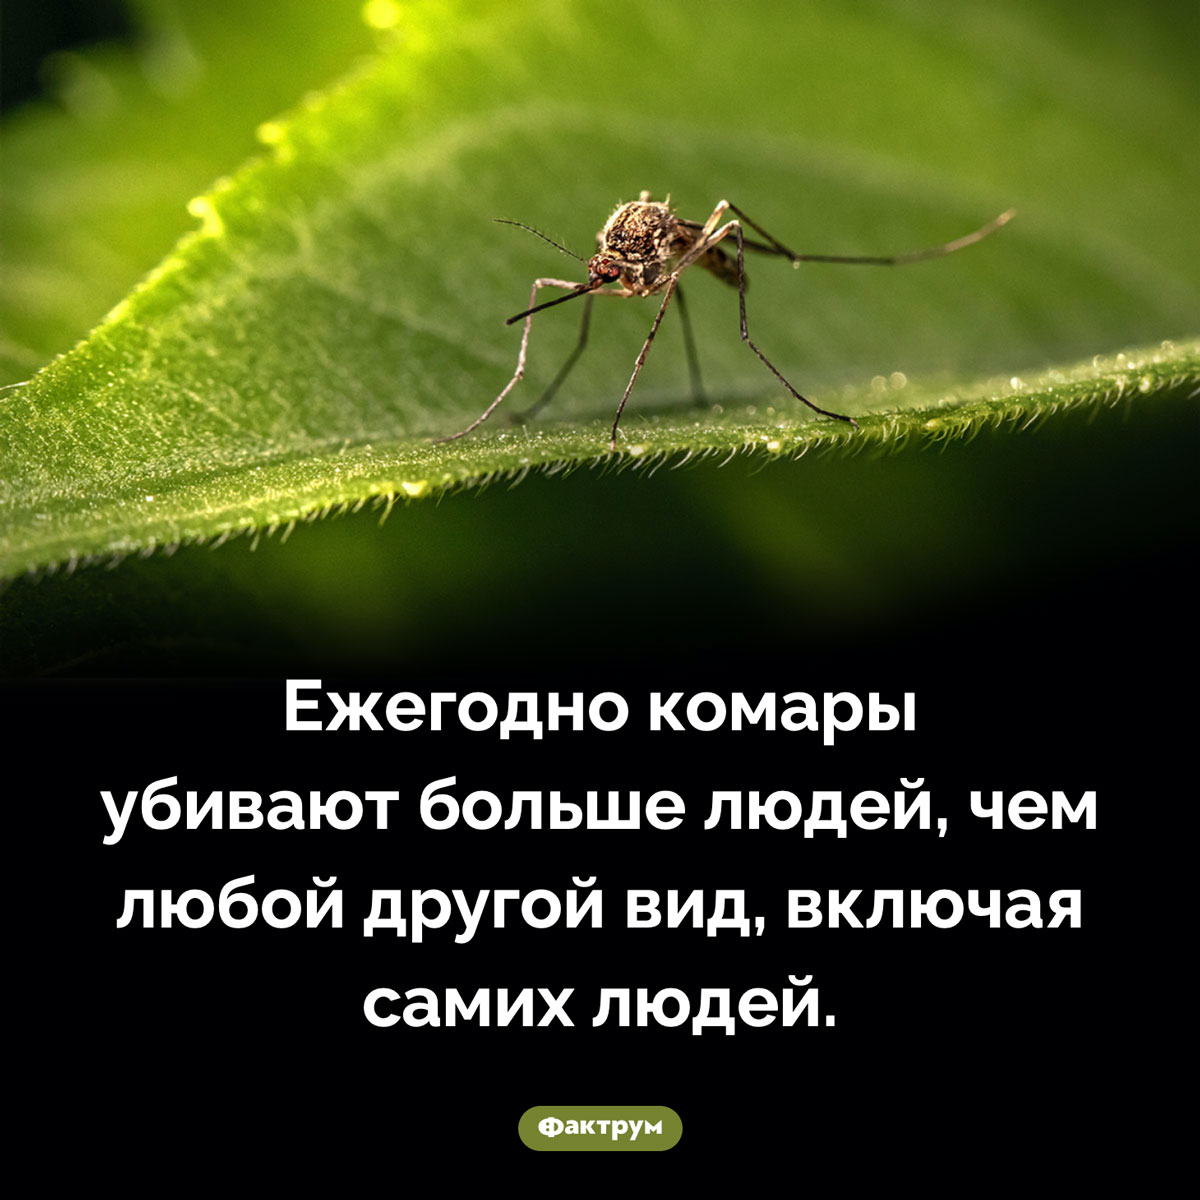 Комары-убийцы. Ежегодно комары убивают больше людей, чем любой другой вид, включая самих людей.